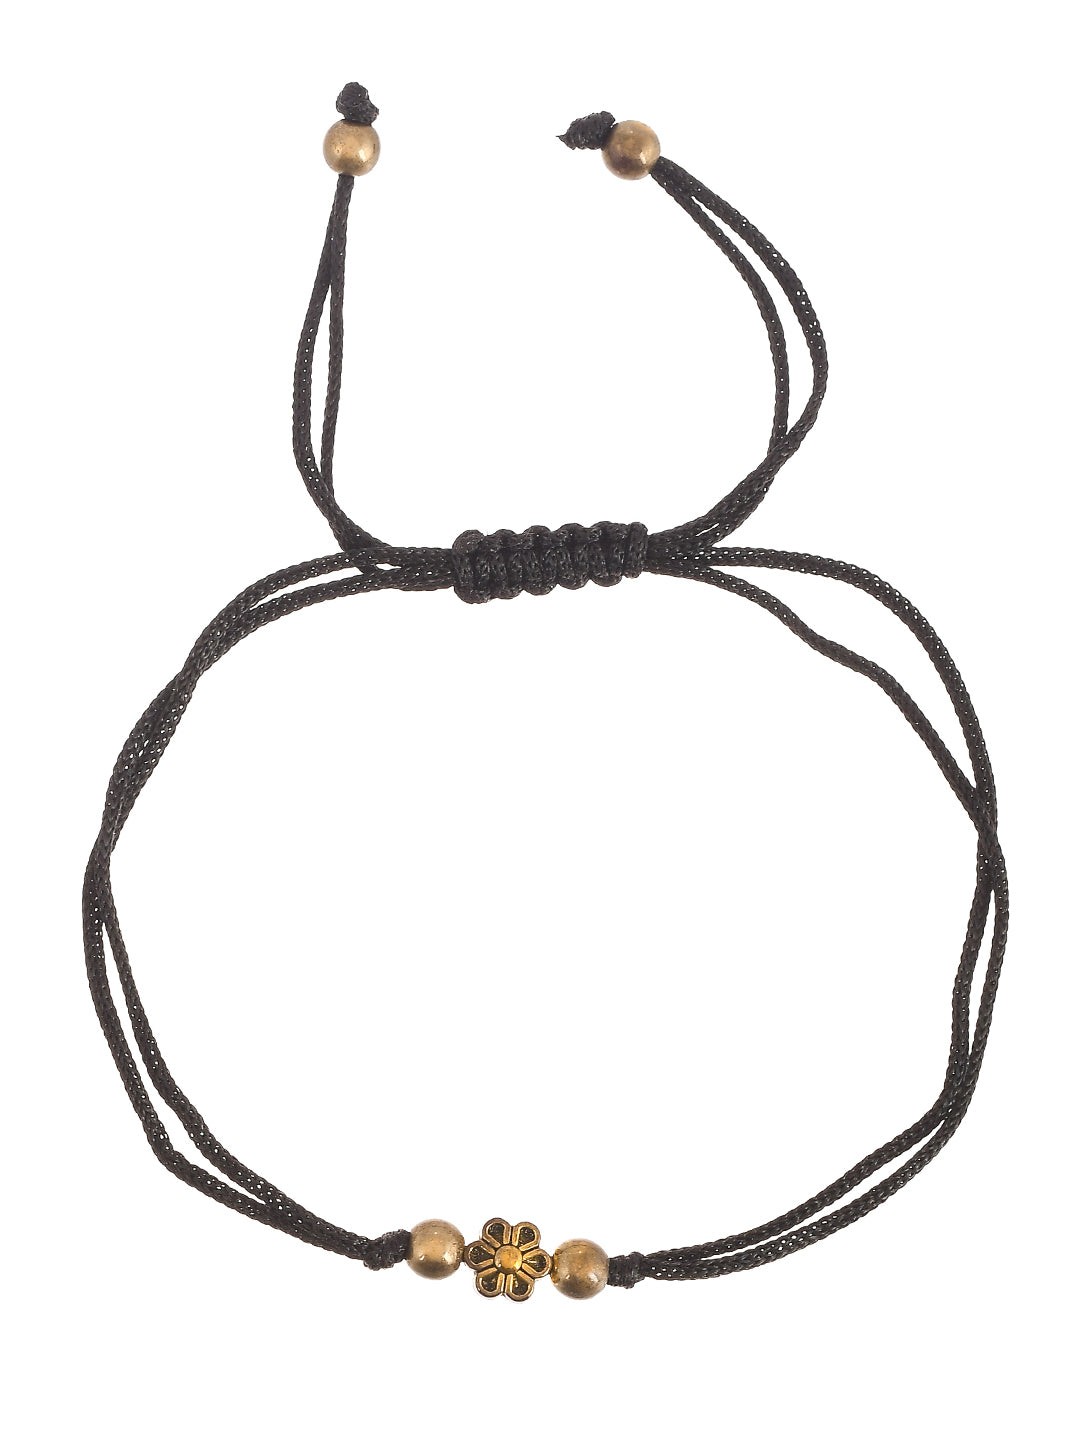 Gold Flower Charm Beads Black Thread Anklet